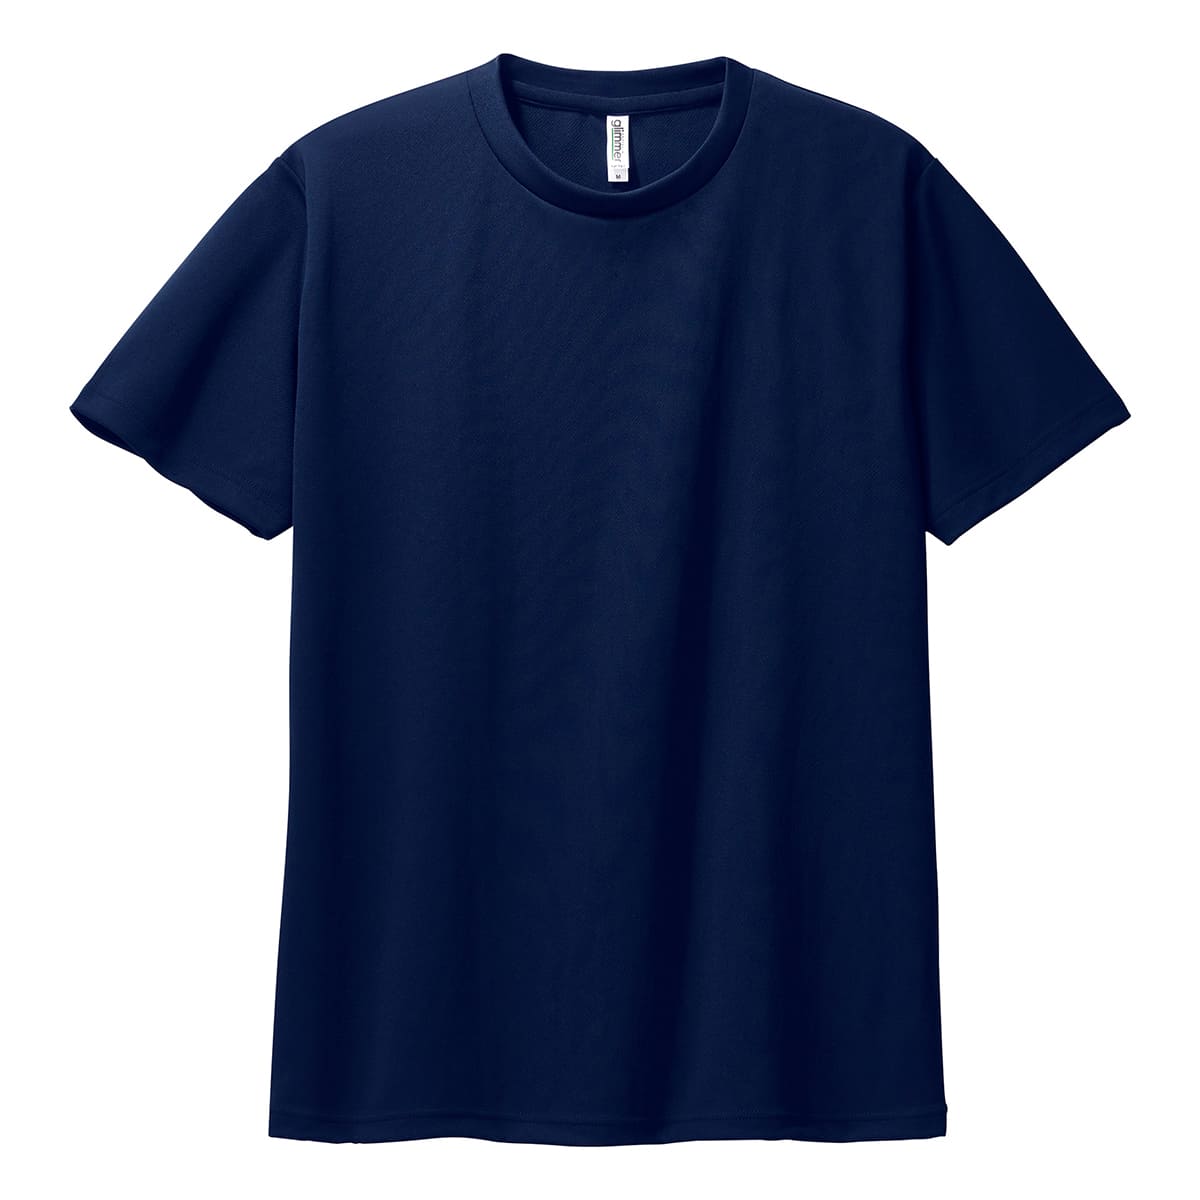 ネイビー(紺) – Tshirt.stビジネス